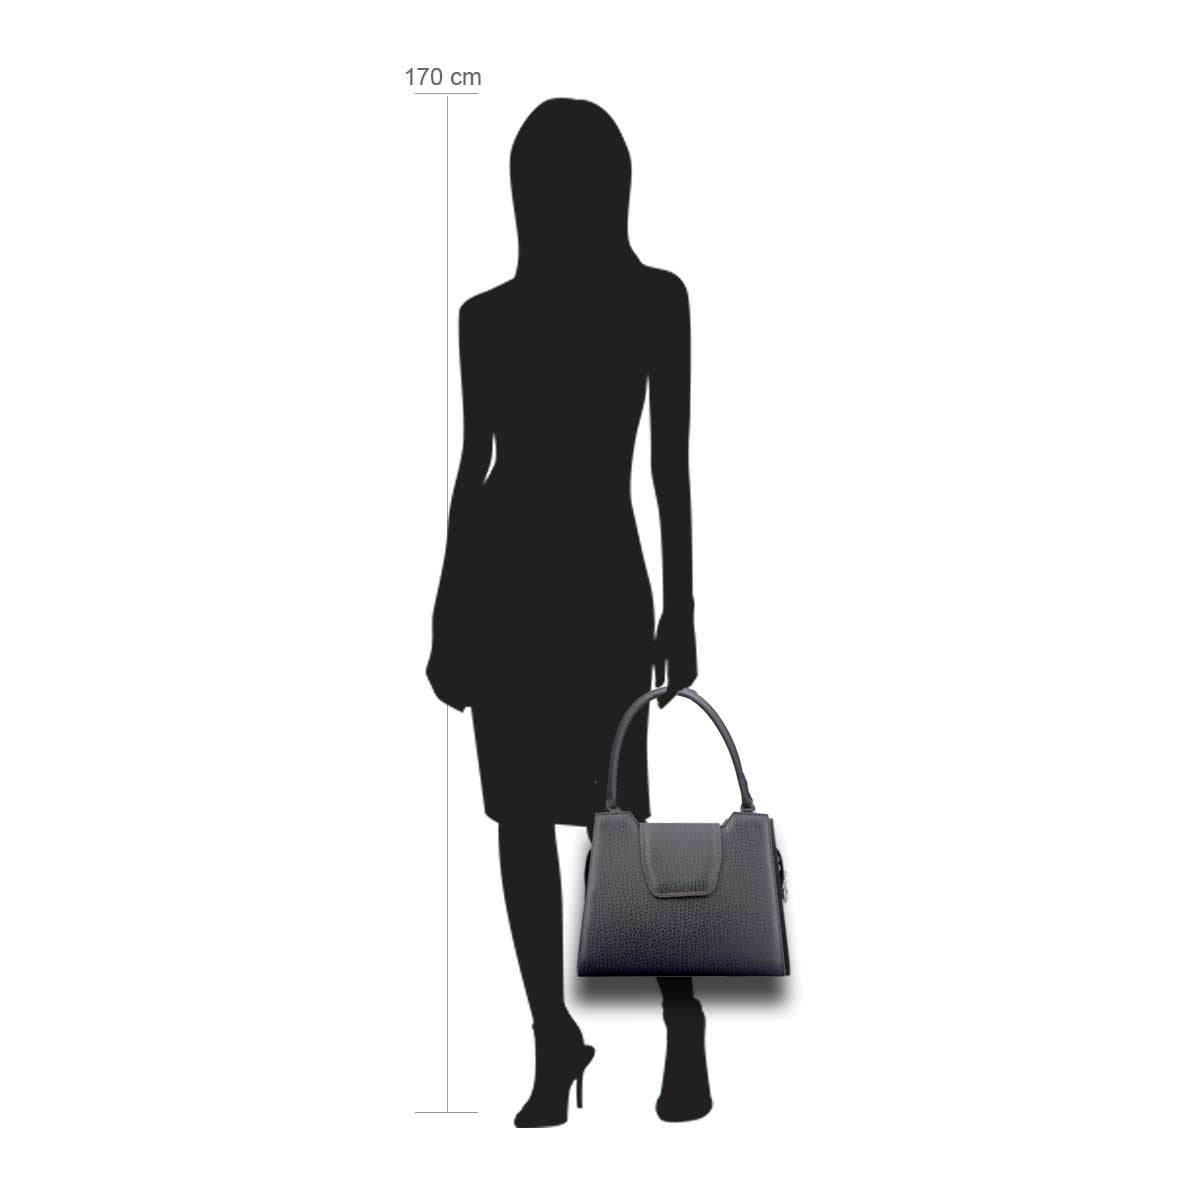 Modellpuppe 170 cm groß zeigt die Handtaschengröße an der Person Modell: Cancun